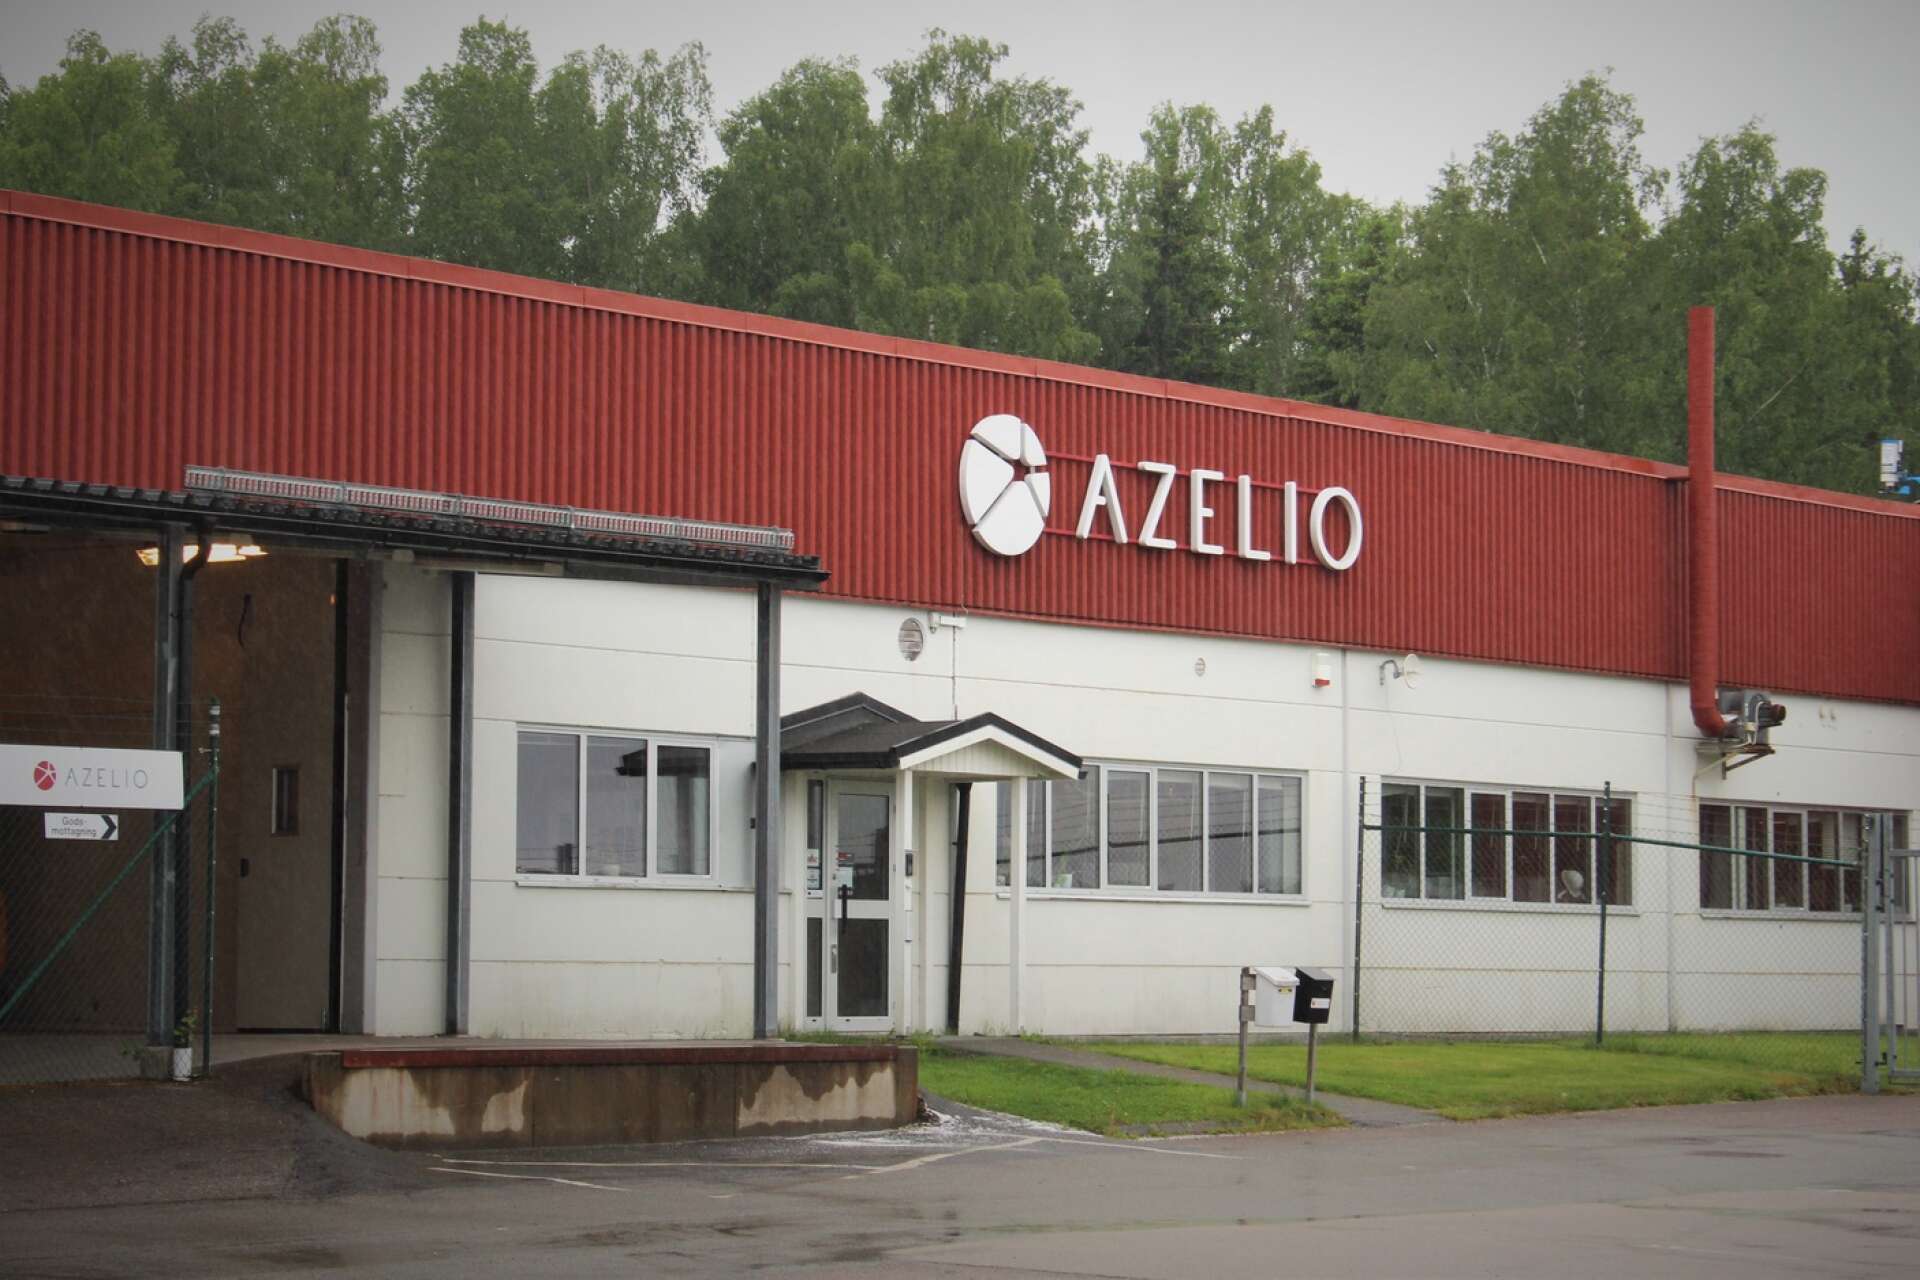 Styrelsen har beslutat att ansöka om konkurs för Azelio AB. Bolaget som har sitt säte i Göteborg har cirka 30 anställda i Åmål.